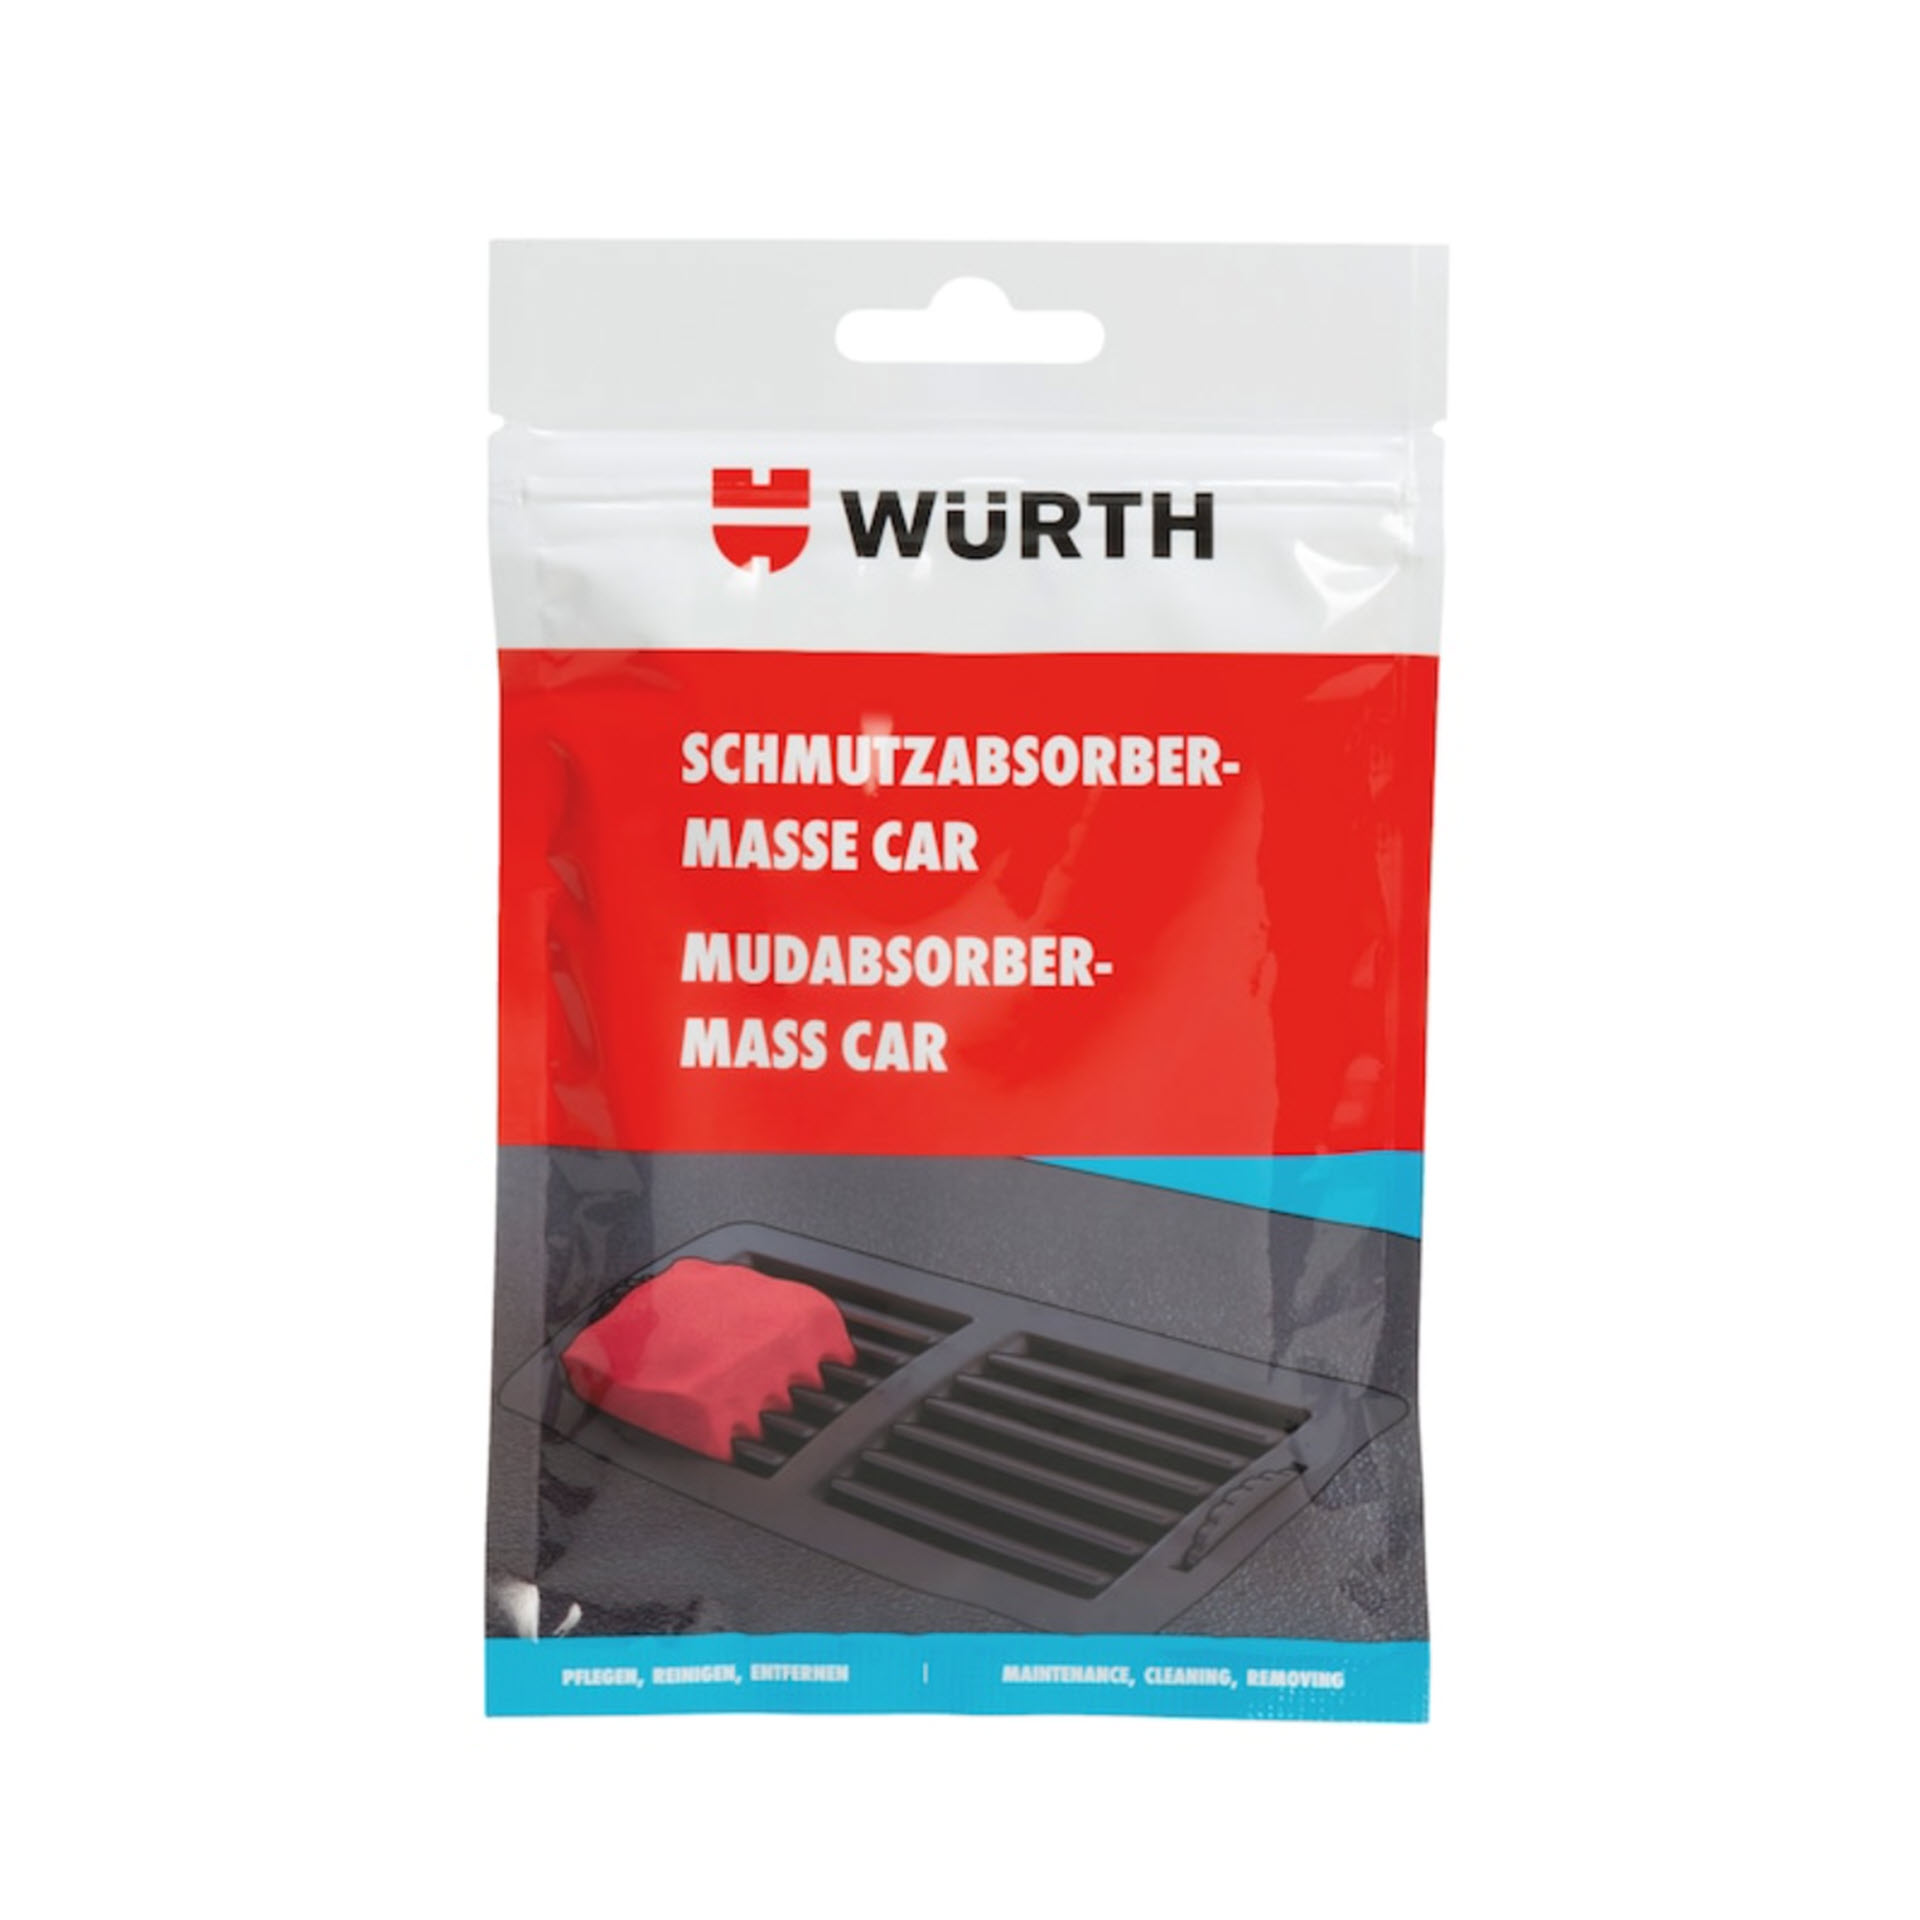 Würth Schmutzabsorber-Masse-Car - 100 g Beutel